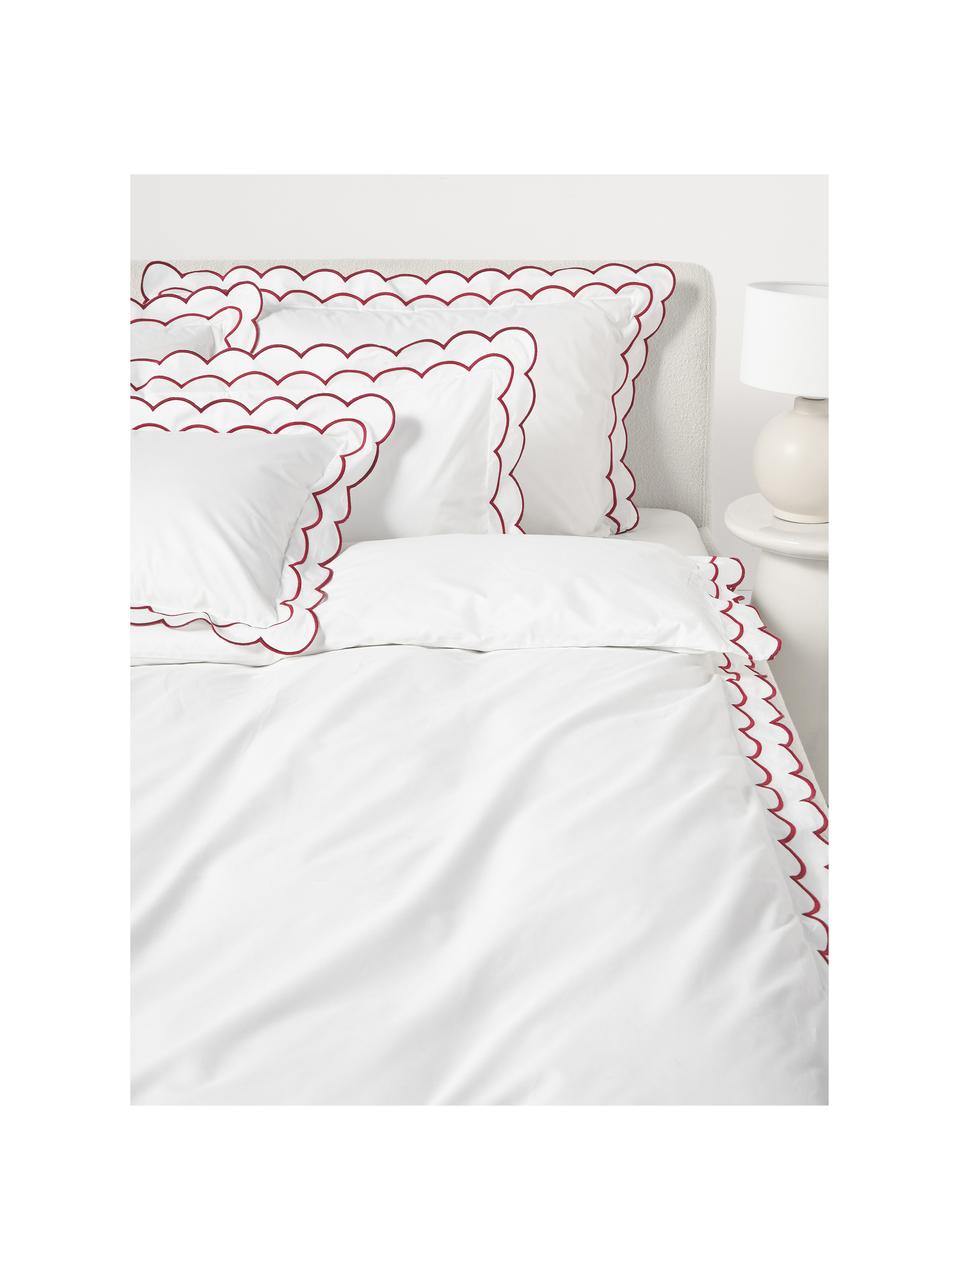 Baumwollperkal-Bettdeckenbezug Atina mit gewelltem Stehsaum, Webart: Perkal Fadendichte 200 TC, Weiß, Rot, B 200 x L 200 cm